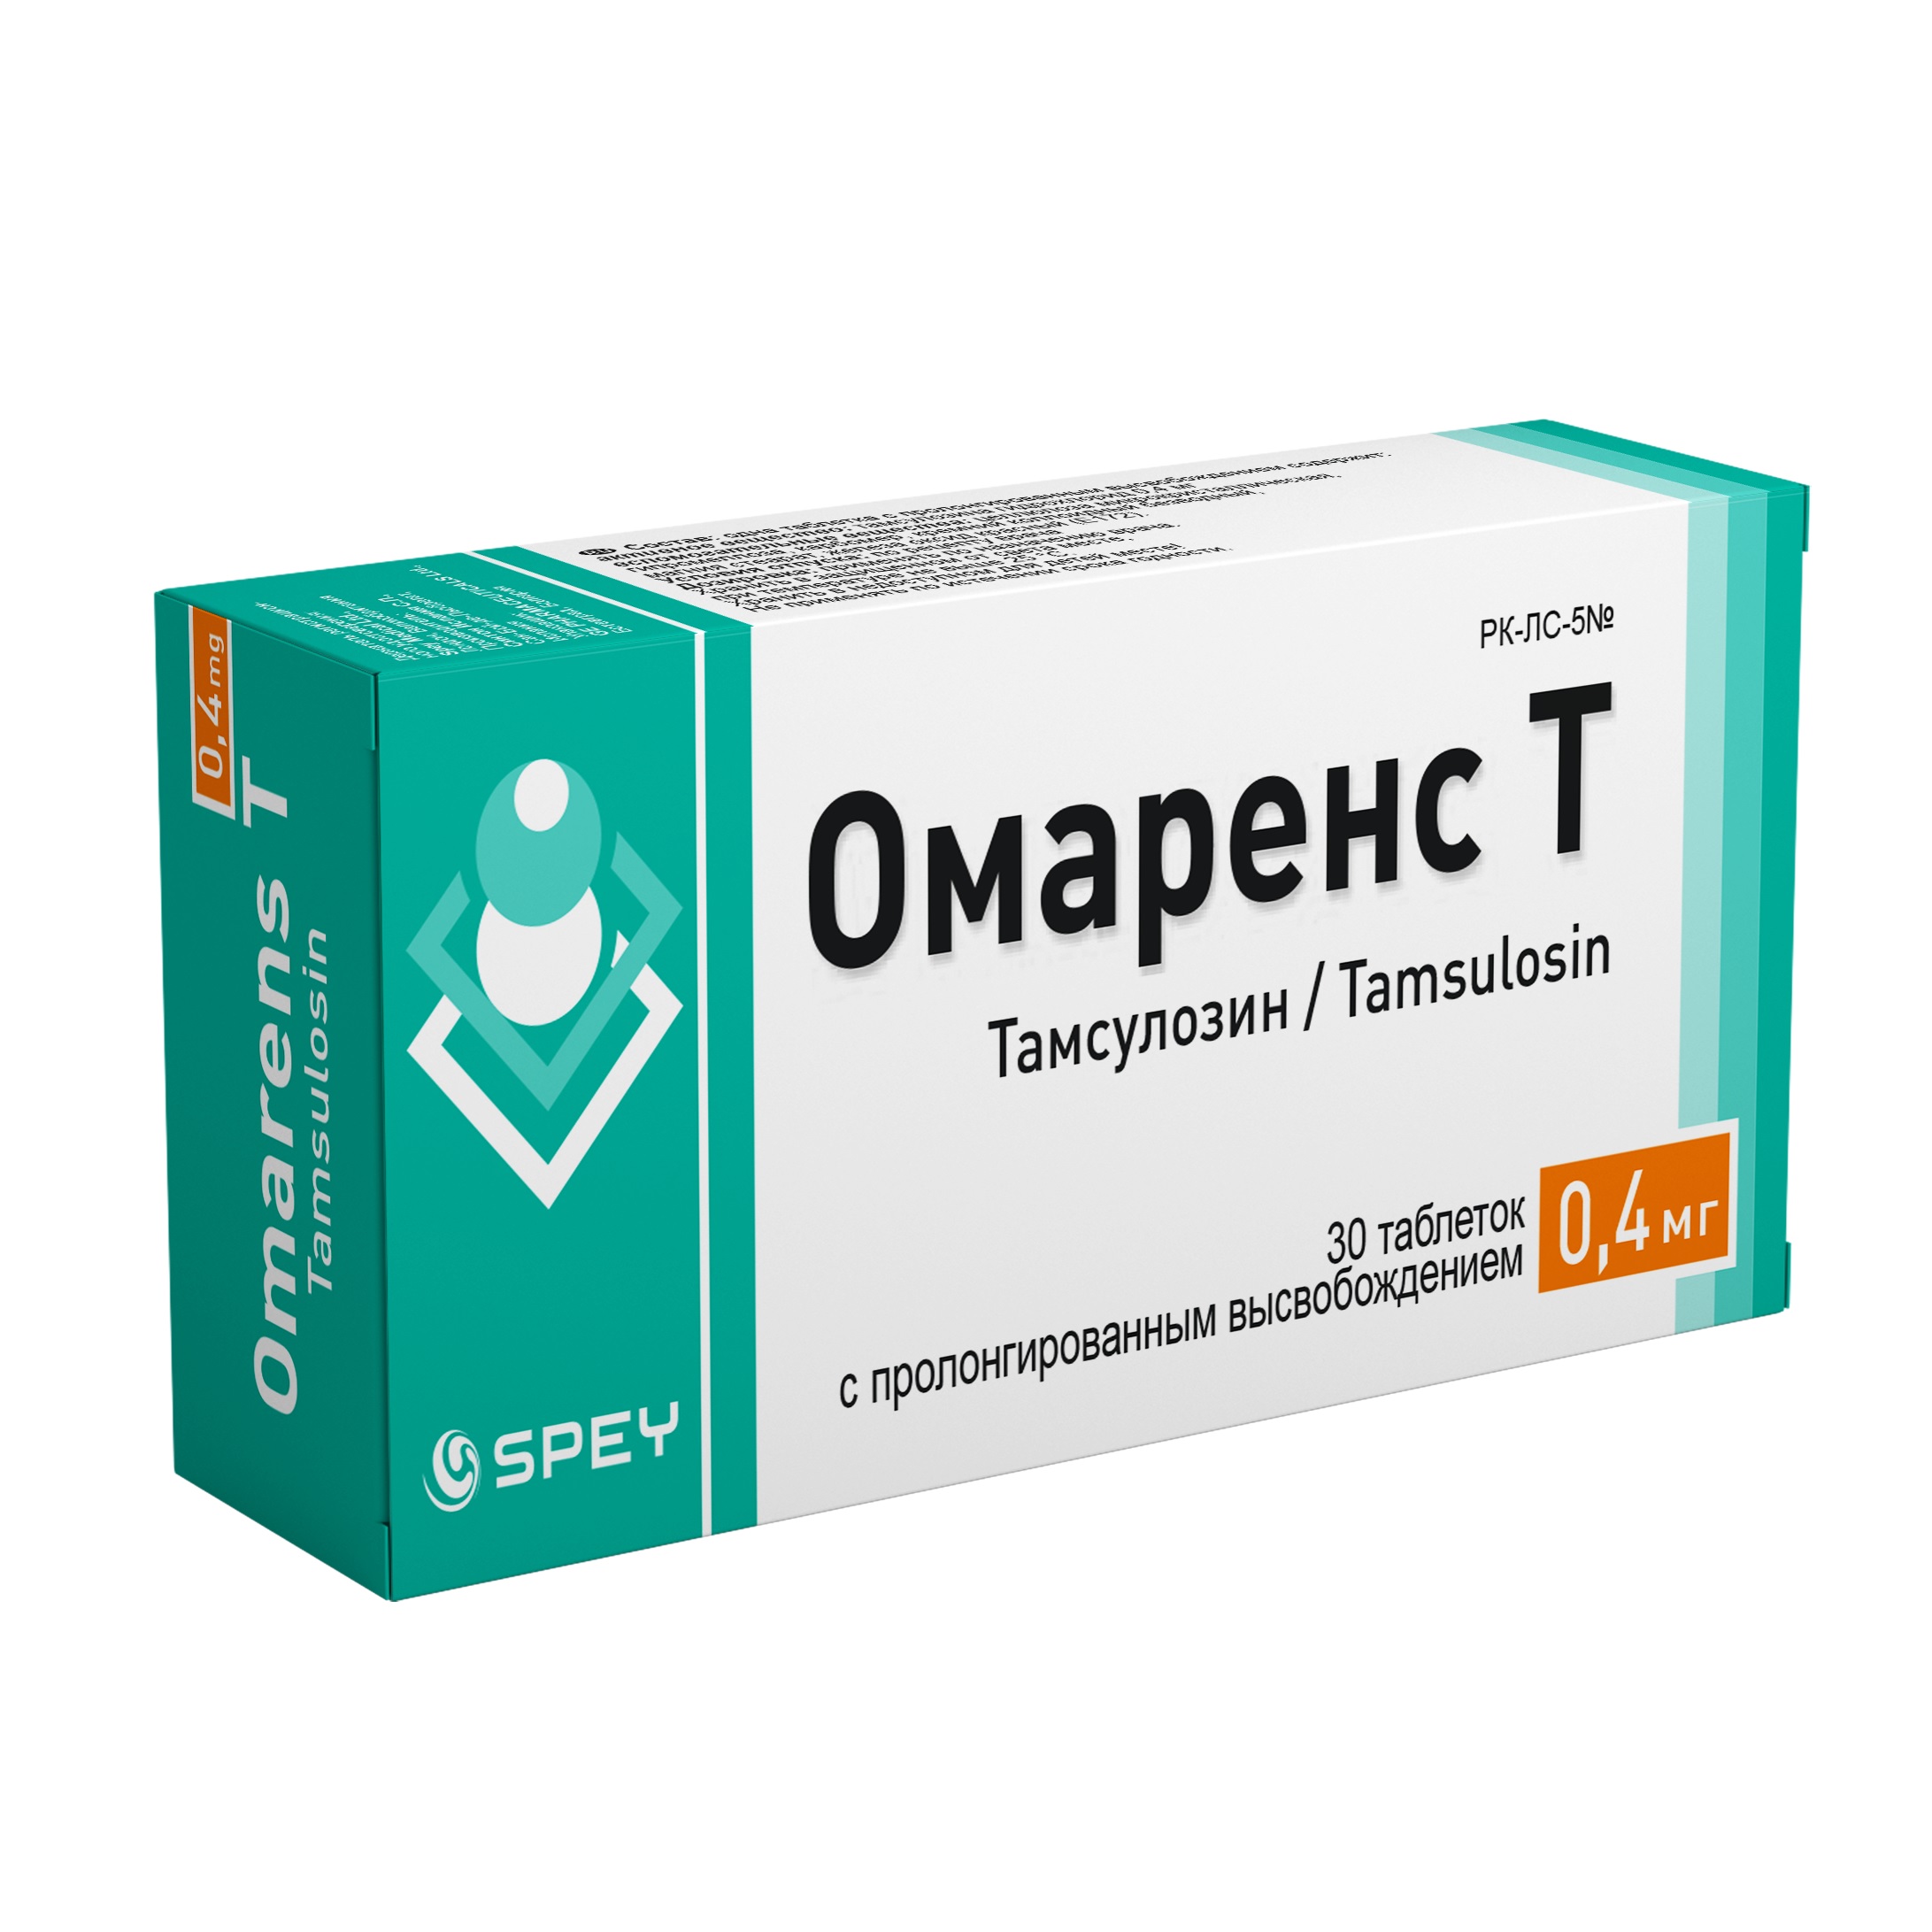 Омаренс Т таблетки 0,4 мг № 30